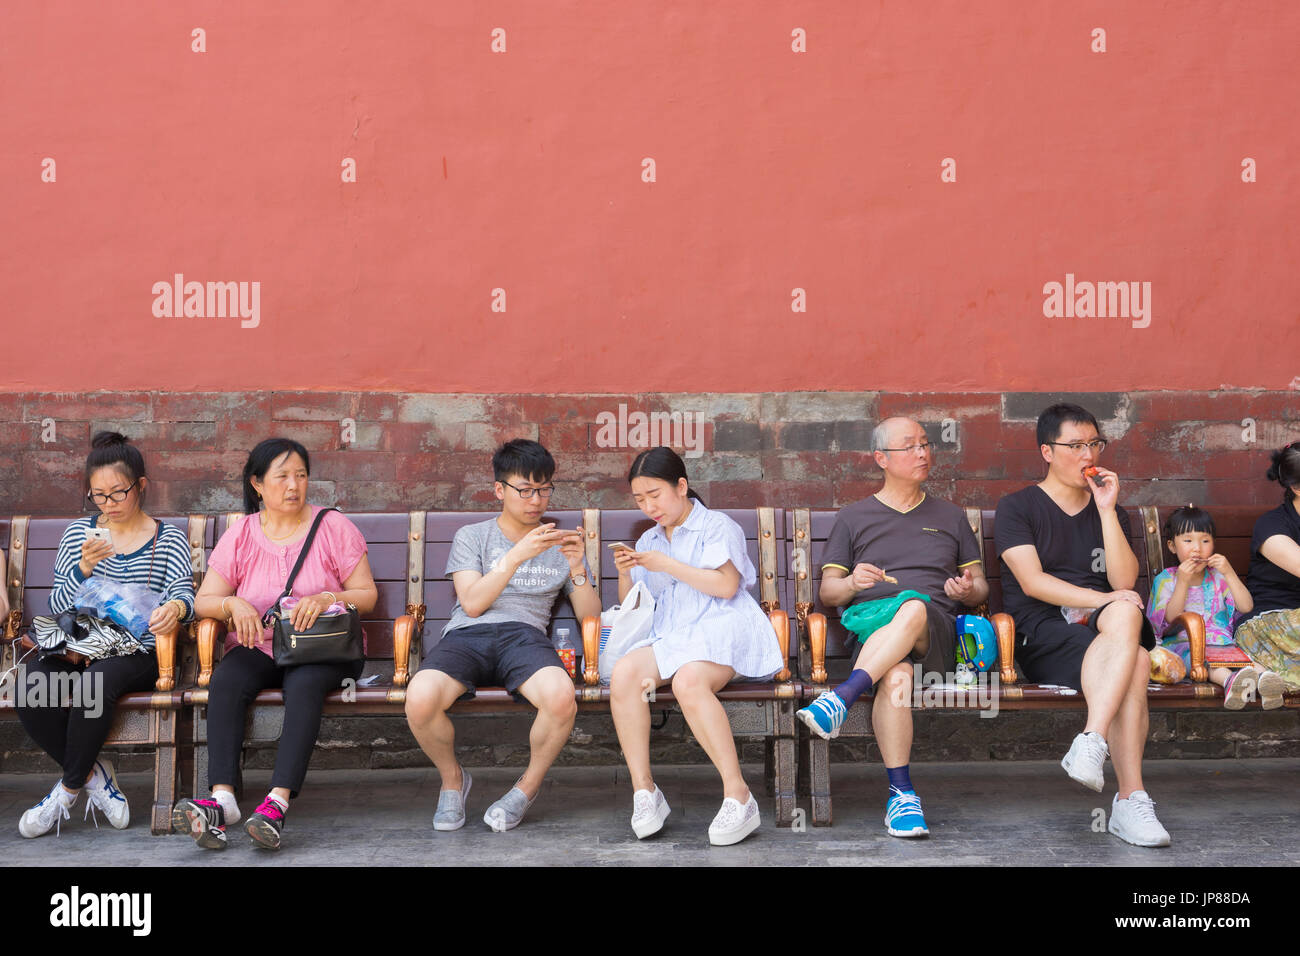 Los turistas chinos de diferentes edades, sentados en un banco en la Ciudad Prohibida en Beijing - algunos comer algunas de sus teléfonos móviles y algunos sentados Foto de stock